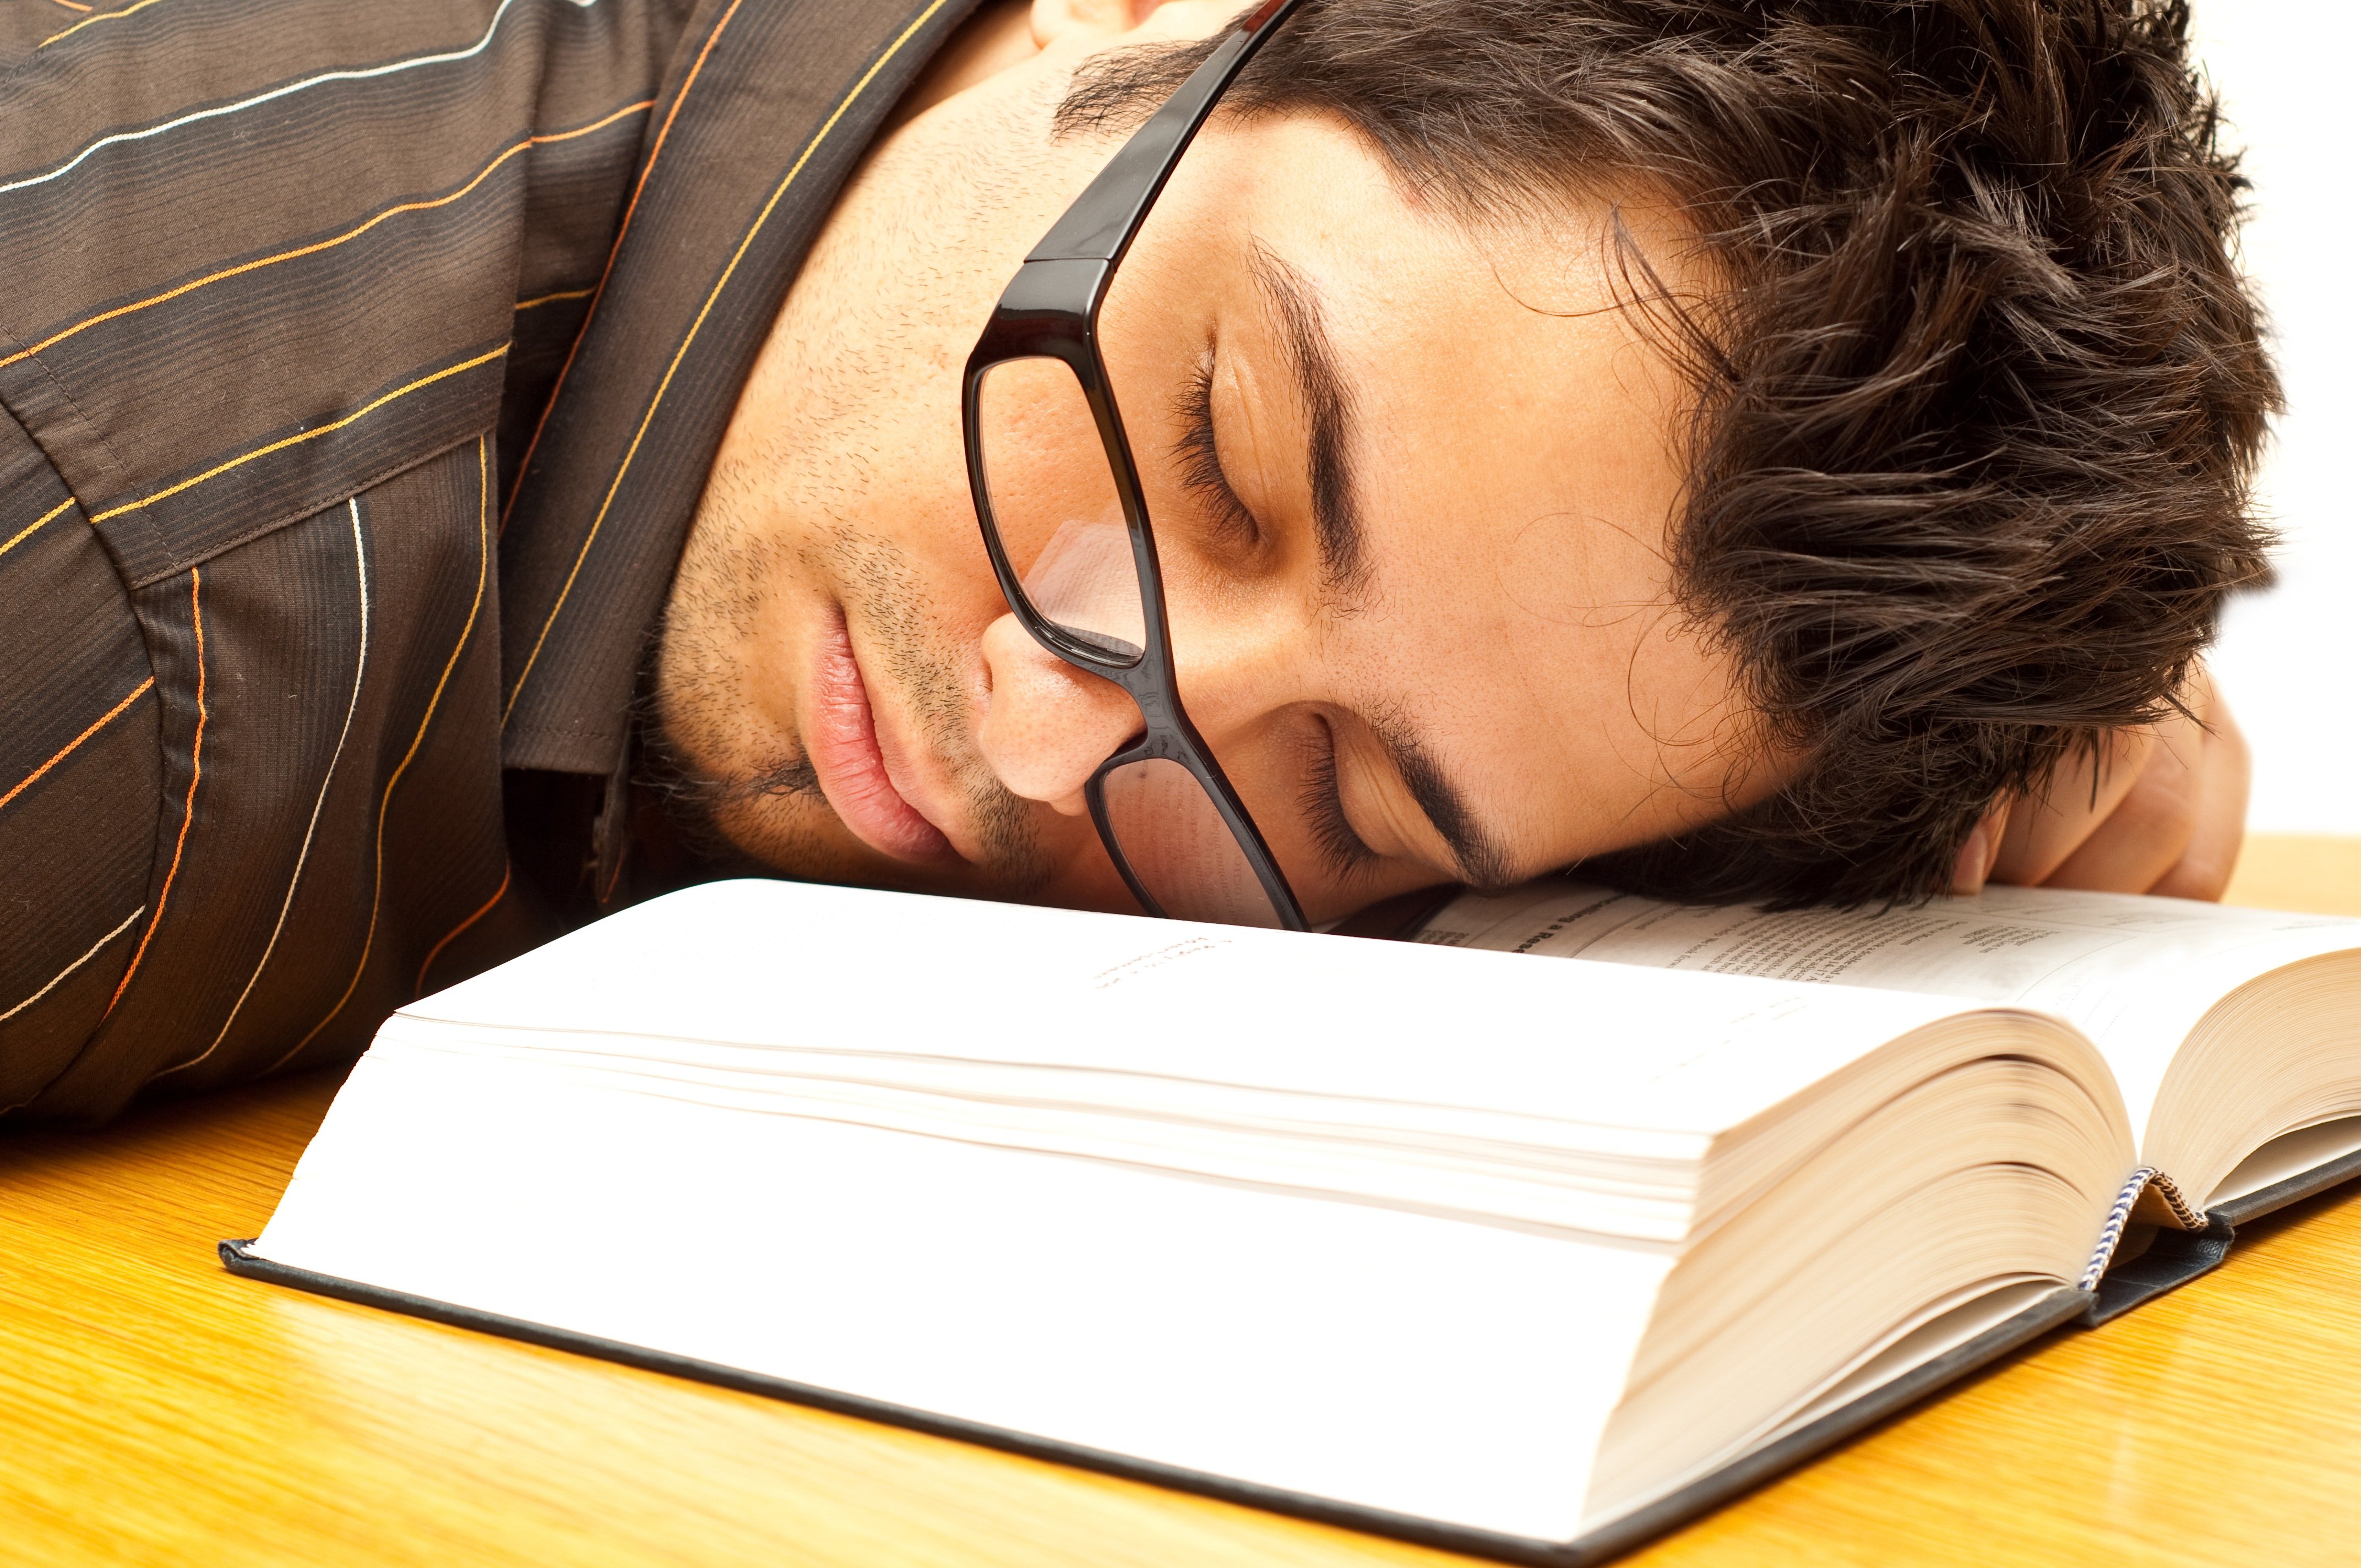 Сплю со студенткой. Спящий человек с книгой. Усталый человек. Усталость от учебы.